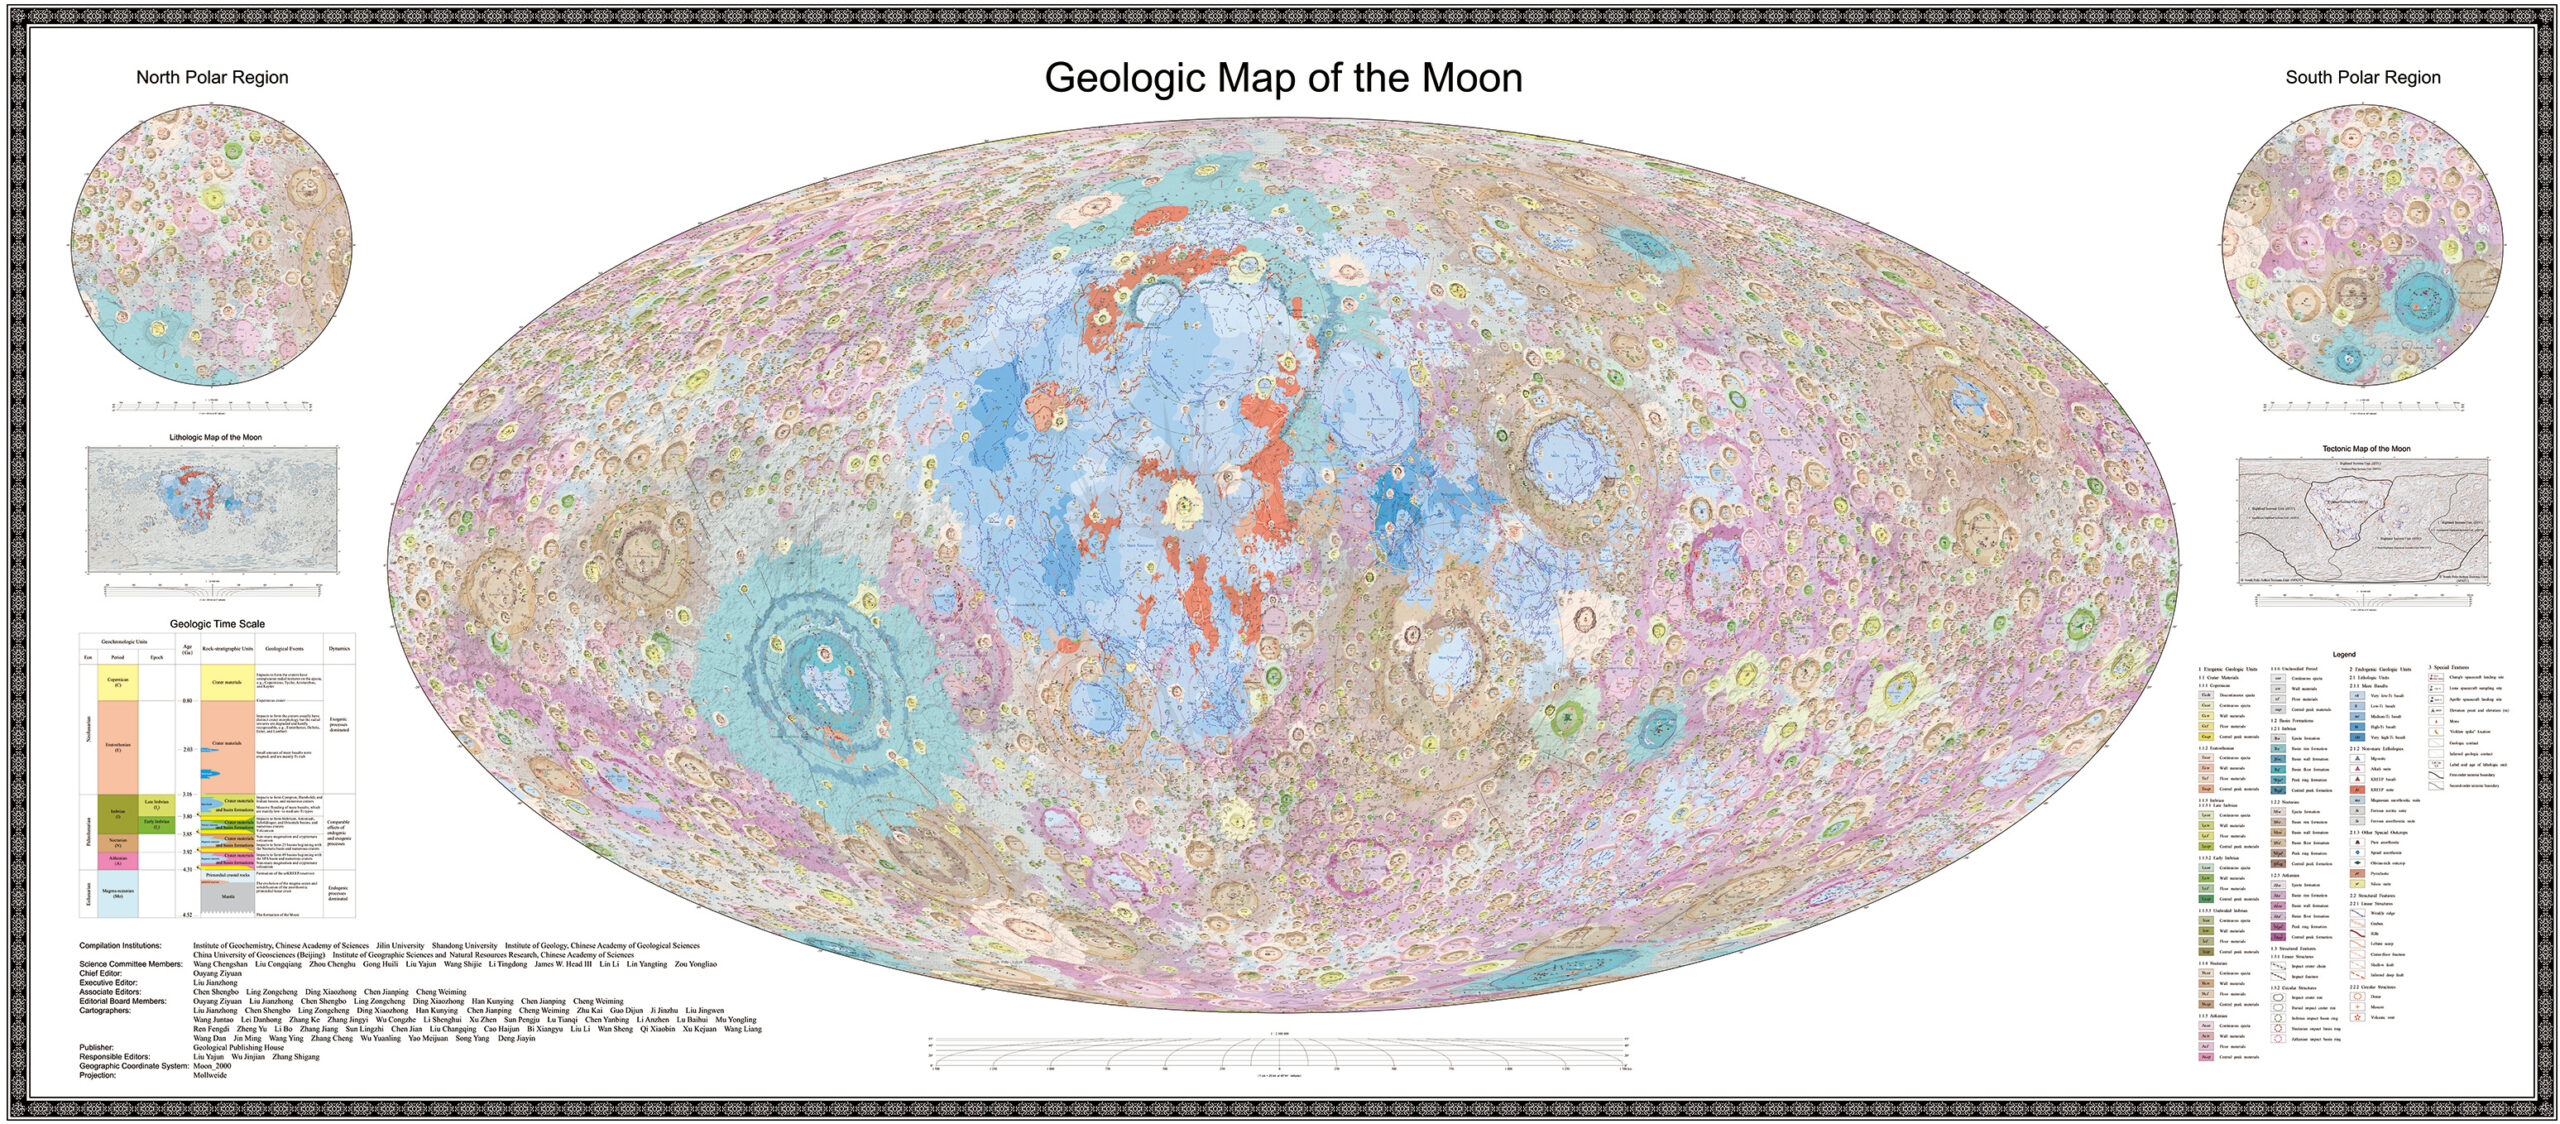 แผนที่ทางธรณีวิทยาของดวงจันทร์ (ภาพโดยสถาบันบัณฑิตวิทยาศาสตร์จีน)